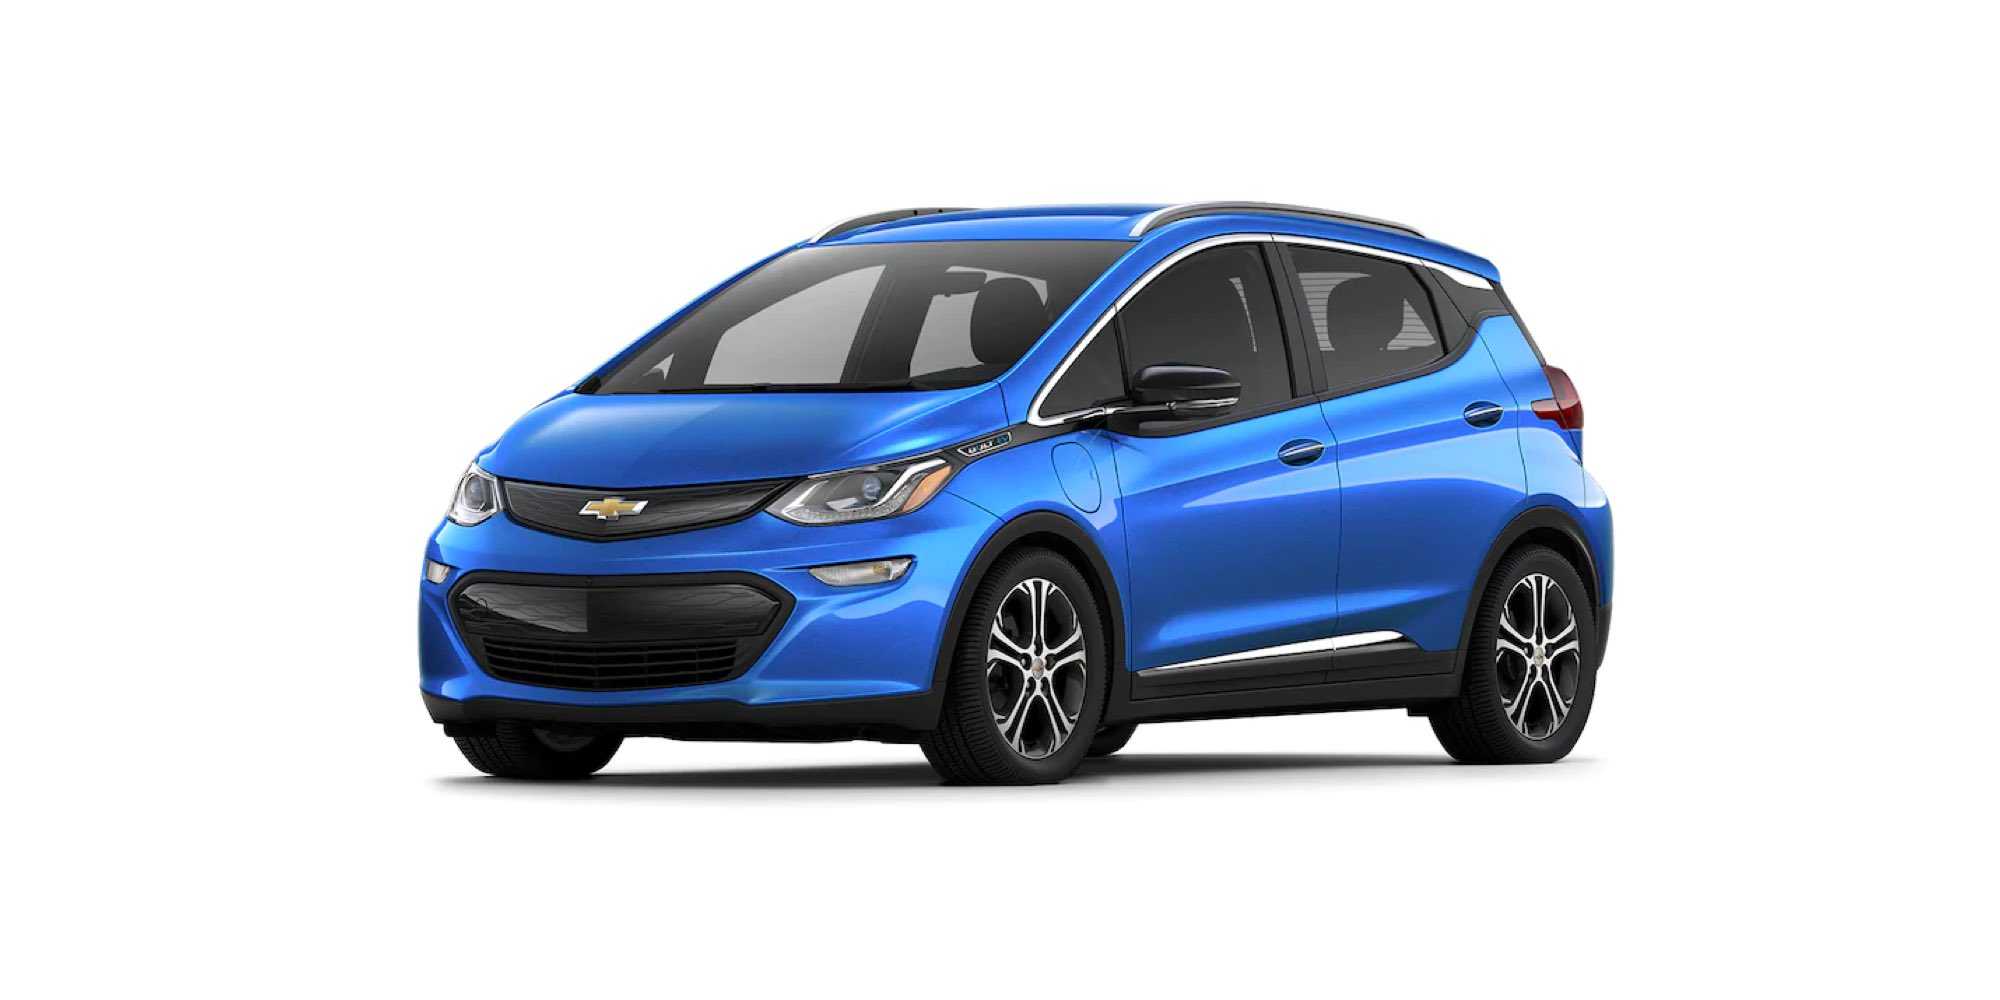 2021 Chevrolet Bolt EV feature image 5